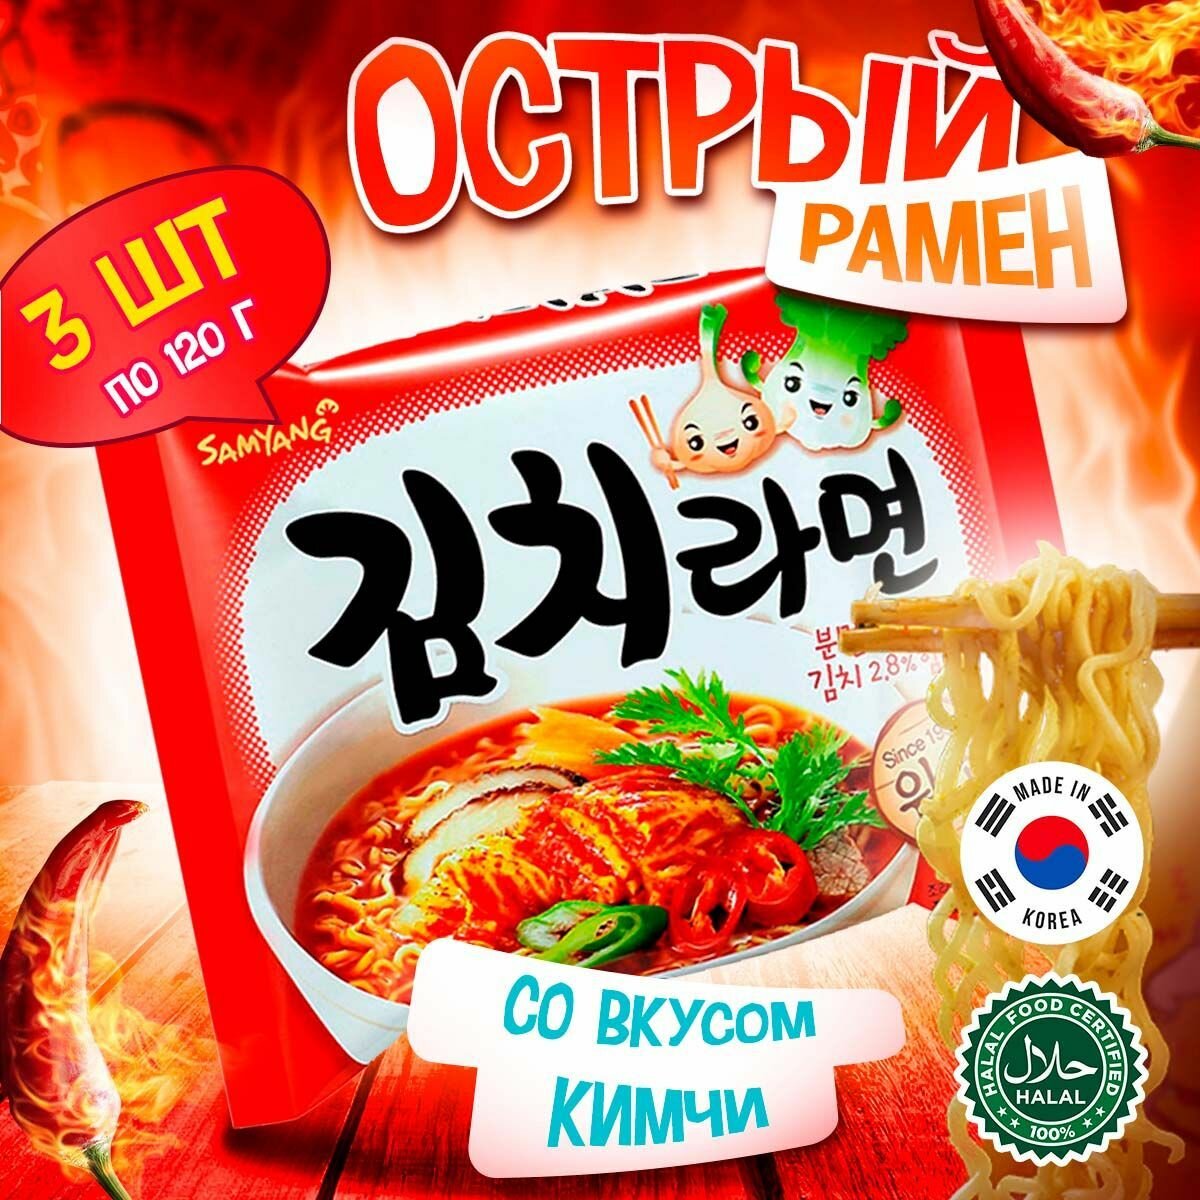 Острая корейская лапша быстрого приготовления Samyang Kimchi Flavor Ramen со вкусом кимчи (Корея), 120 г (3 шт)